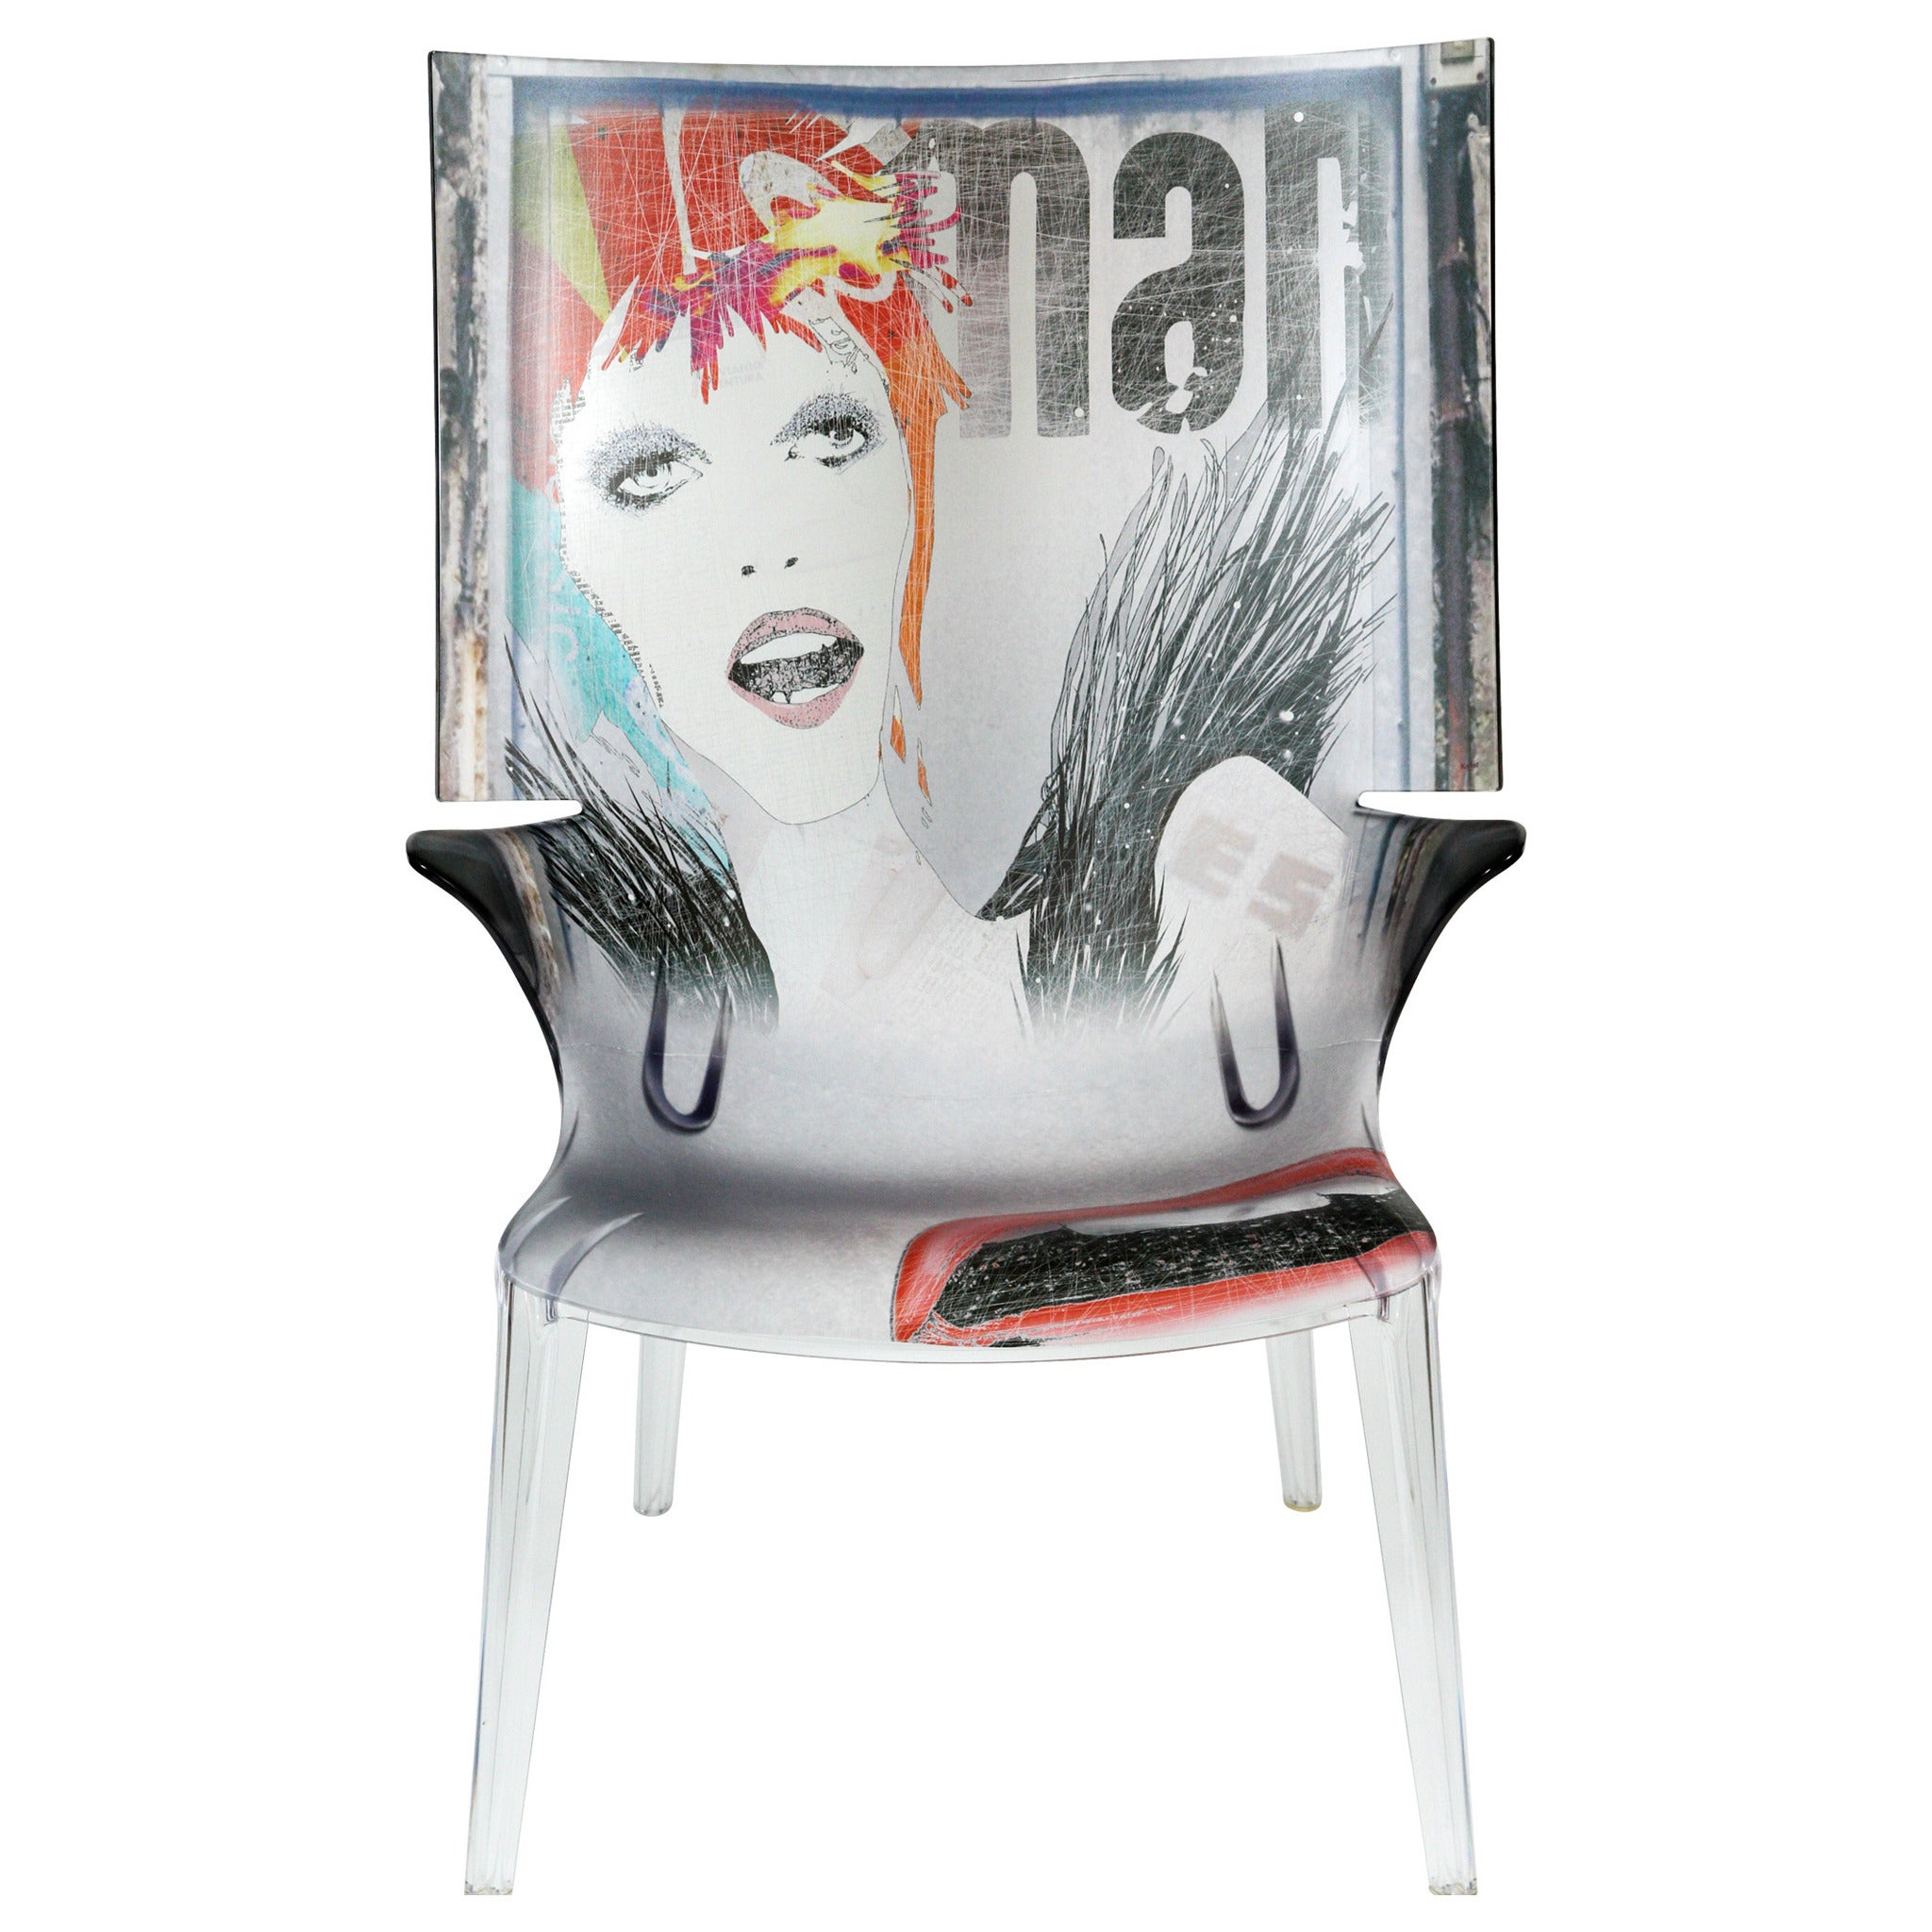 David Bowie "Man" Transparent Polycarbonate Uncle Jim Ghost Chair For Sale